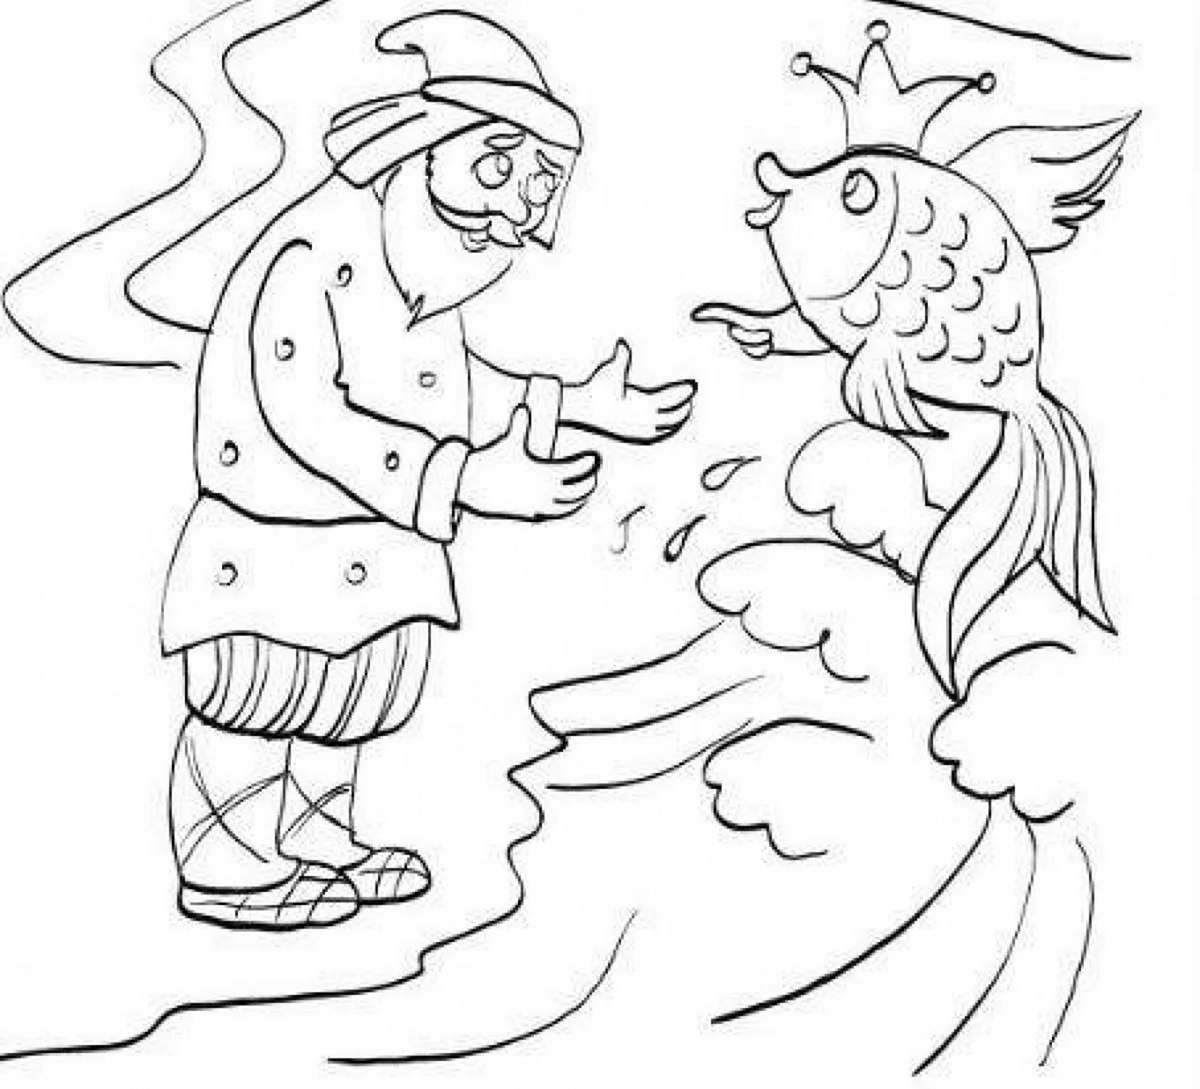 Рисунки к сказке Пушкина сказка о рыбаке и рыбке. Для срисовки